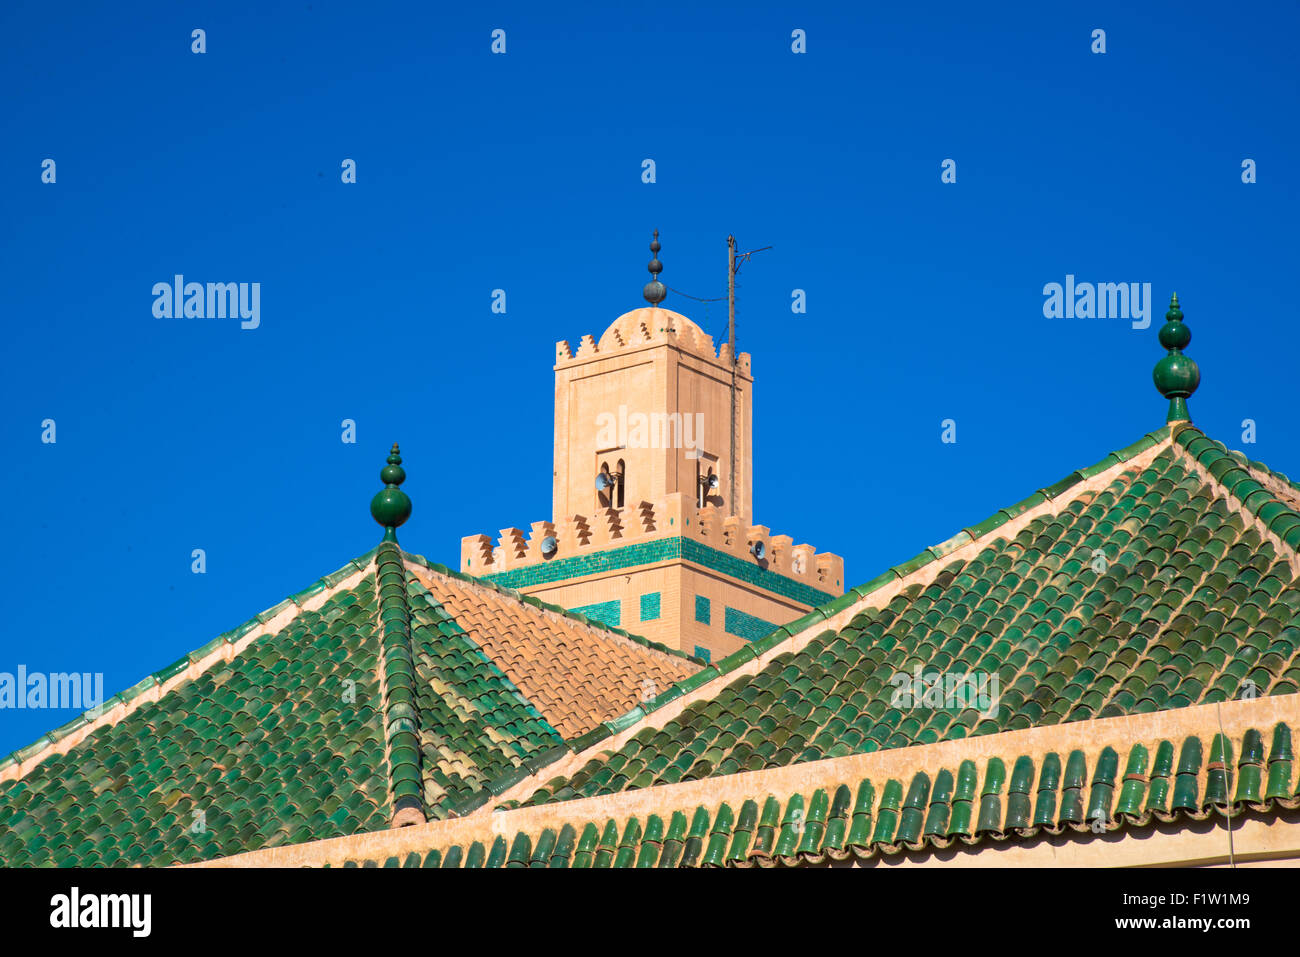 ali ben youssef mosque in marrakech maroc Stock Photo